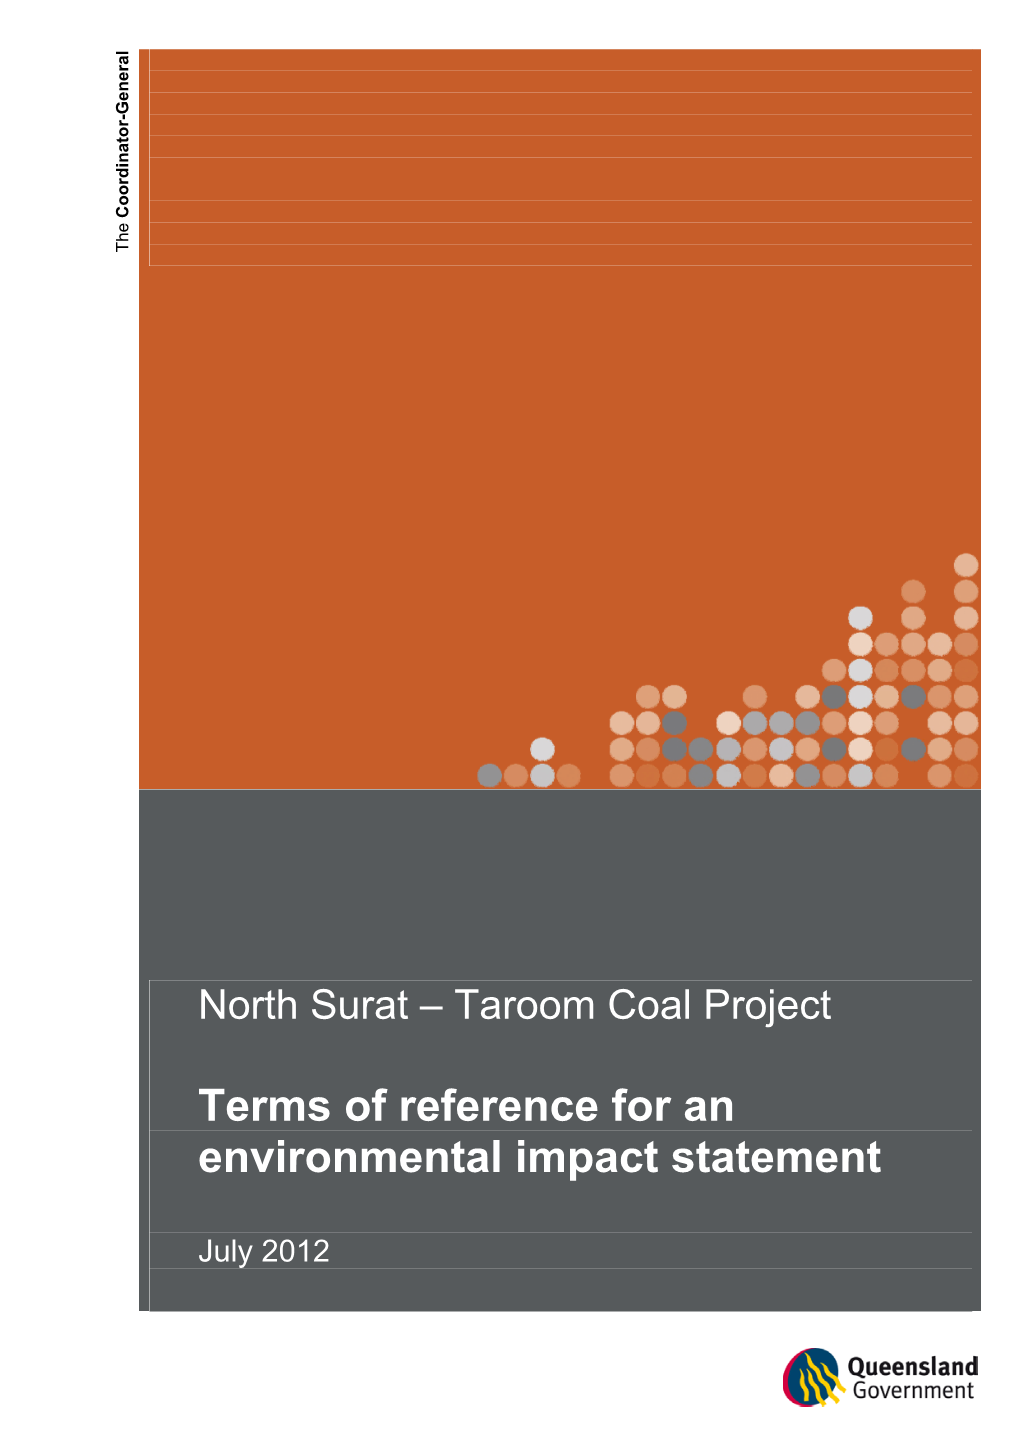 Taroom Coal Project